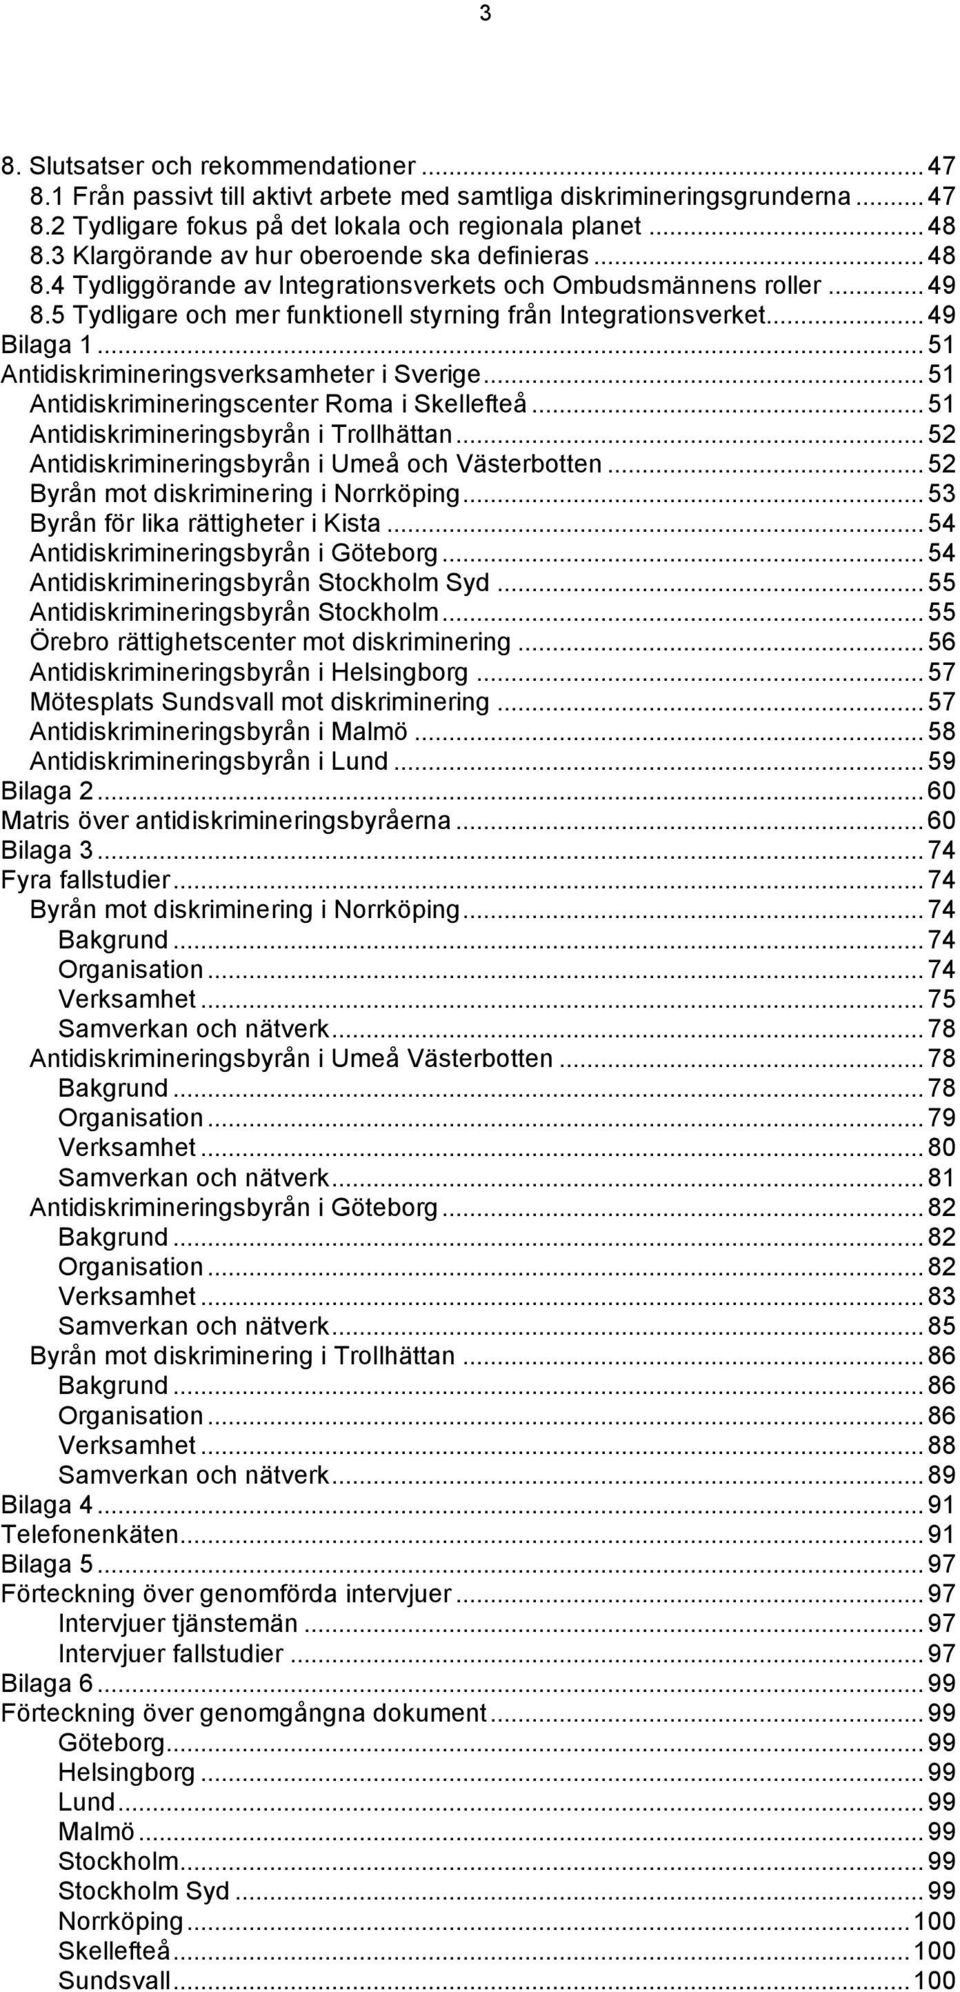 .. 49 Bilaga 1... 51 Antidiskrimineringsverksamheter i Sverige... 51 Antidiskrimineringscenter Roma i Skellefteå... 51 Antidiskrimineringsbyrån i Trollhättan.